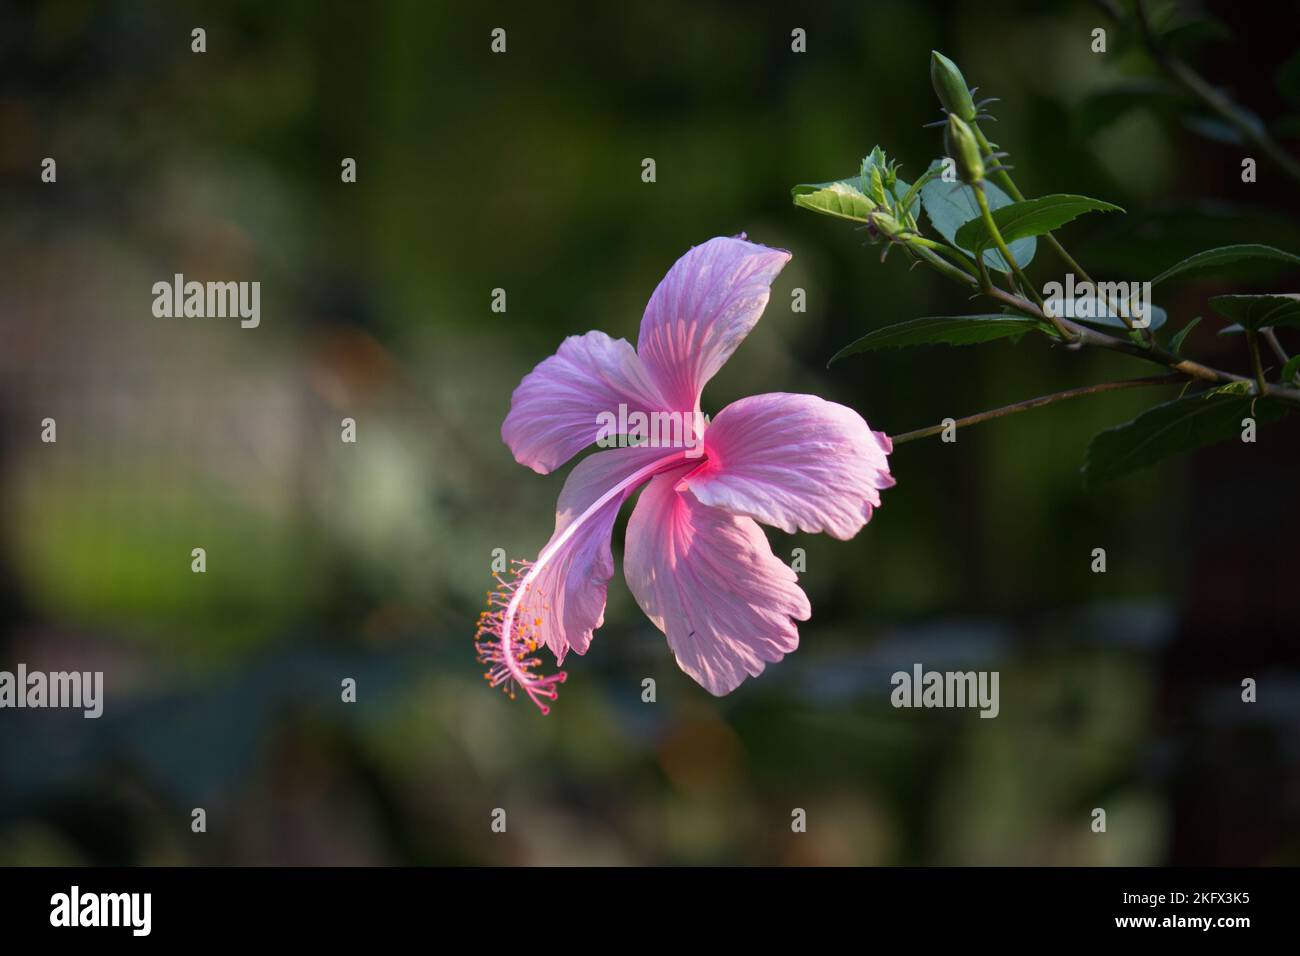 Hibiskusblüte in der Malvenfamilie Malvaceae. Hibiscus rosa-sinensis, bekannt als die Schuhblume in voller Blüte während der Frühjahrssaison in Indien. Stockfoto